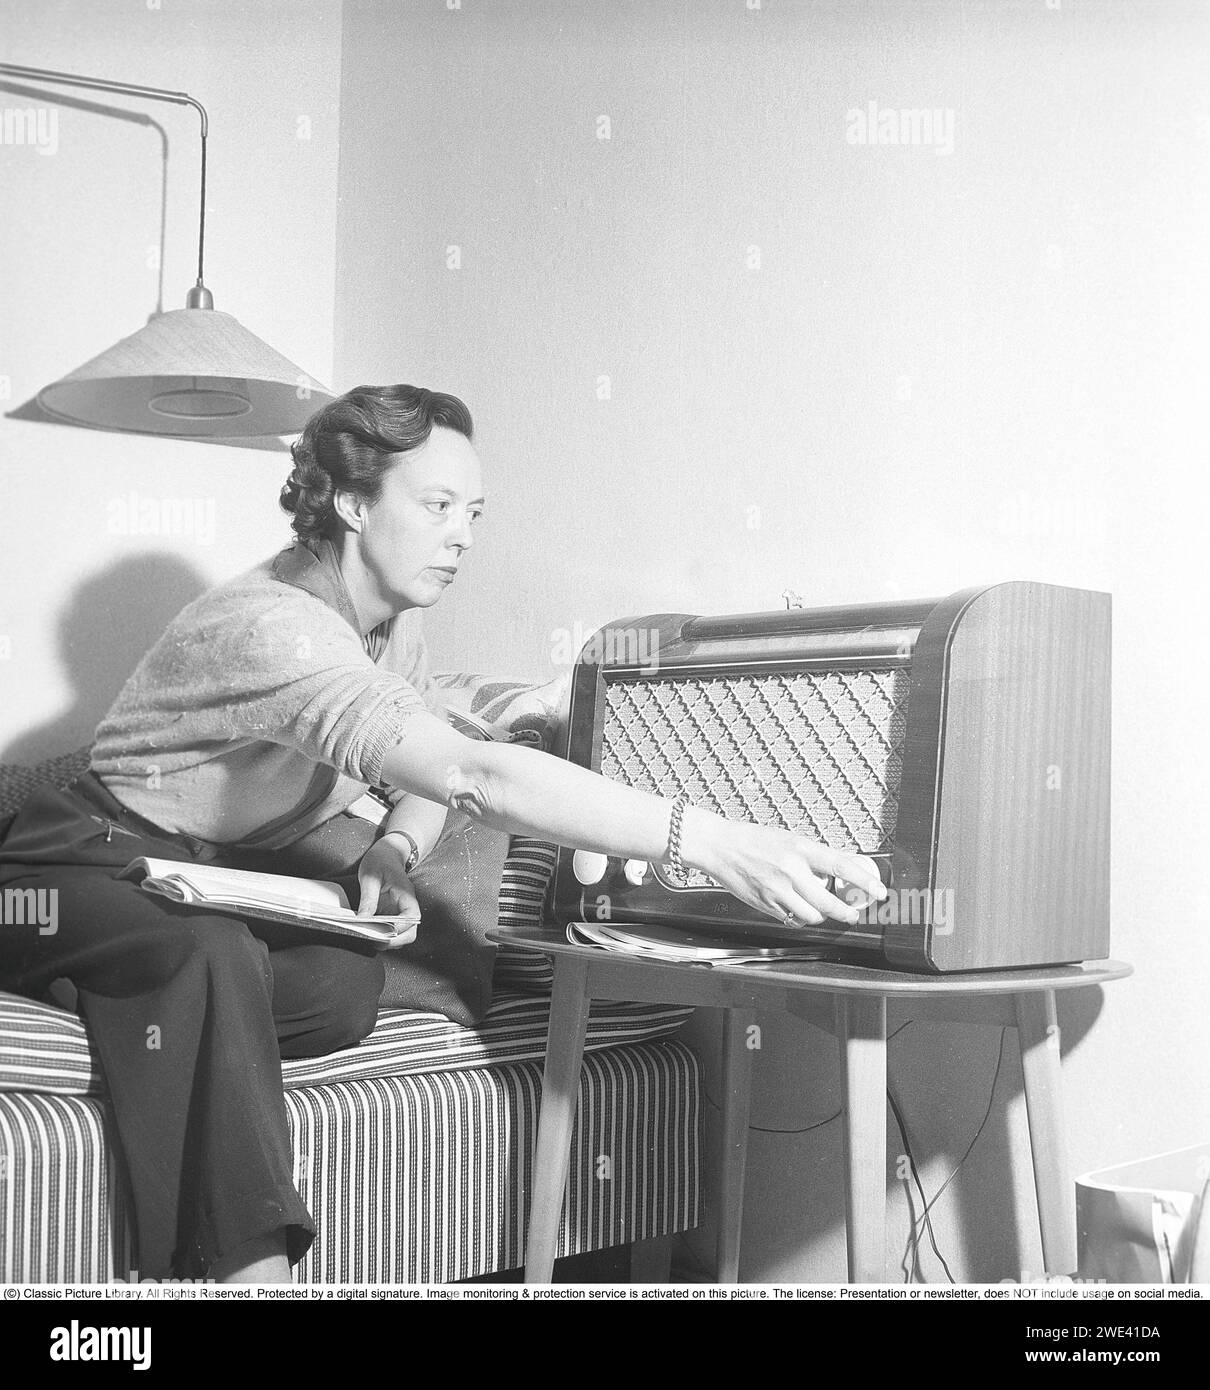 Ingrid Samuelsson, schwedische Radiojournalistin, war eine der ersten weiblichen Radioreporterinnen im schwedischen Radio, das vor den 1940er Jahren vollständig von Männern dominiert wurde. Hier zu Hause von einem Radio der Marke AGA. Sie dreht den Knopf, um die richtige Radiofrequenz für den Empfang der Radiosendung einzustellen. Der obere Teil des Radios zeigt an, welcher Sender gesendet wird, wenn Sie das Wahlrad drehen. Neben UKW-Sendungen wurden auch ausländische Radiosender auf Langwelle gehört. 1950 Krisoffersson Ref. AY3-4 Stockfoto